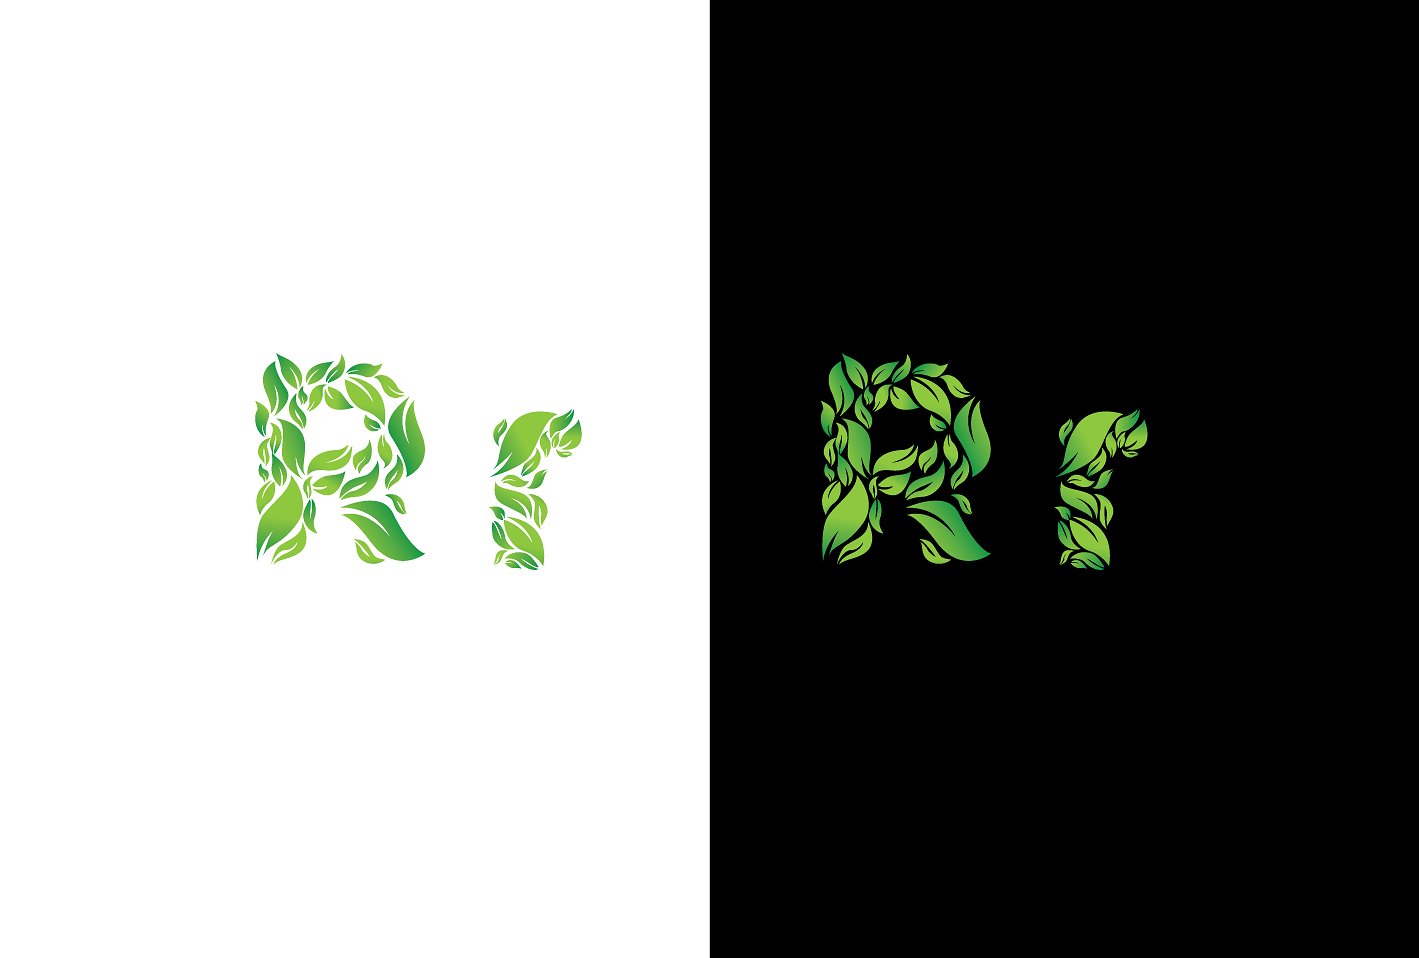 炫酷的绿色清新矢量英文字母字体素材 EcoFont #147